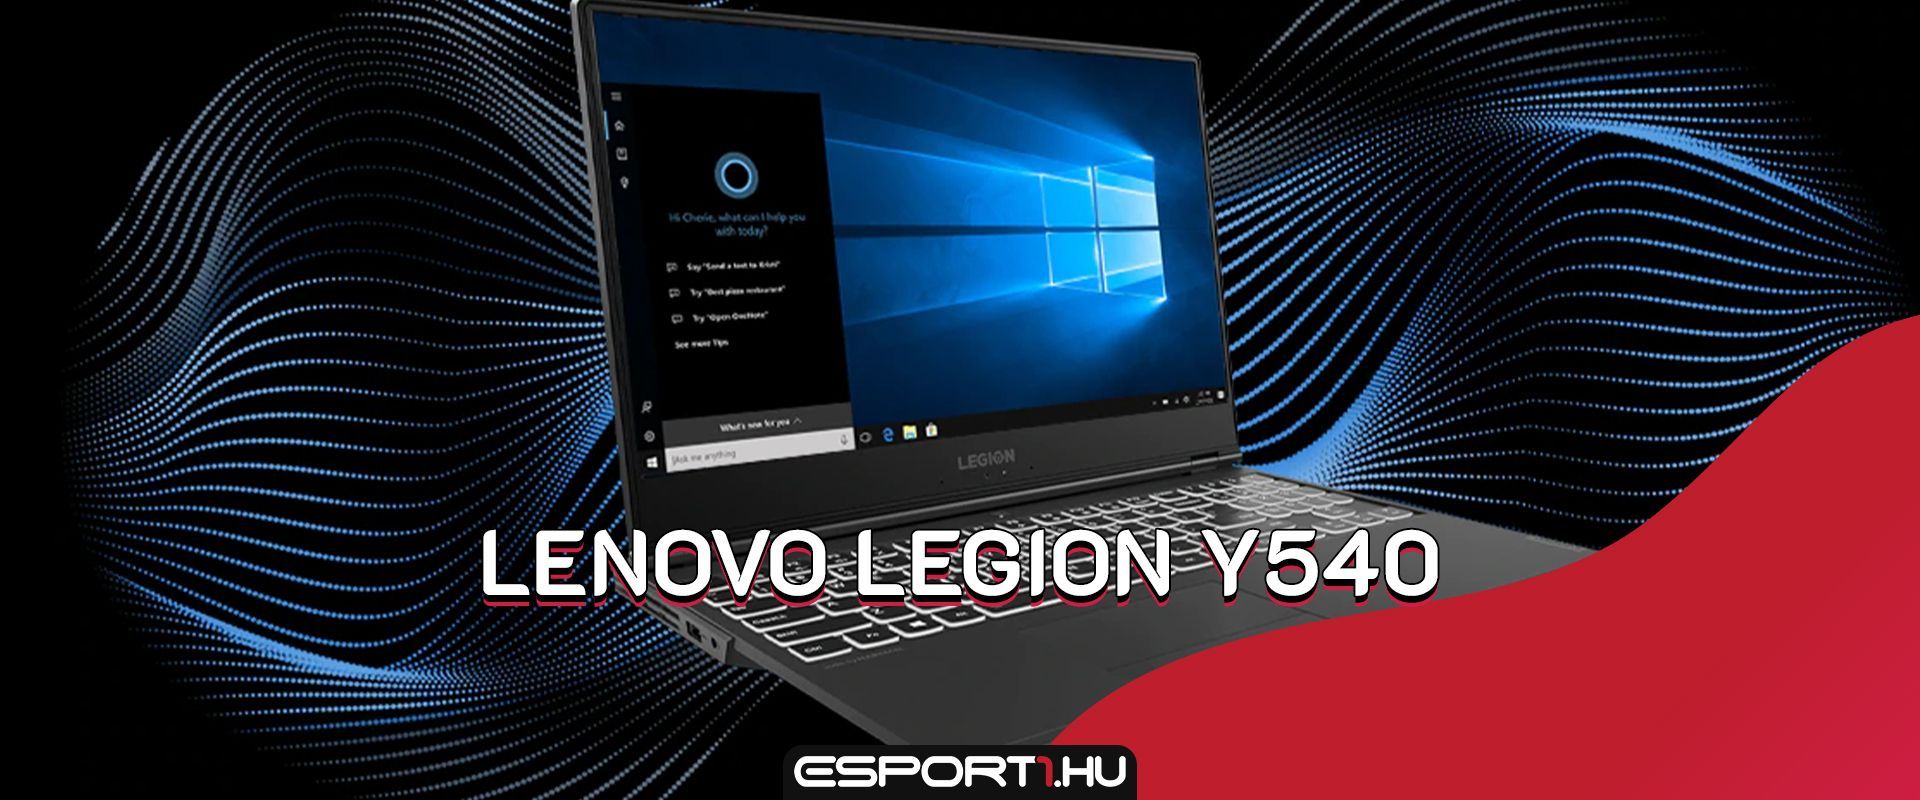 Lenovo Y540 gamer laptop teszt: Árkategória bajnoka minden játékos számára